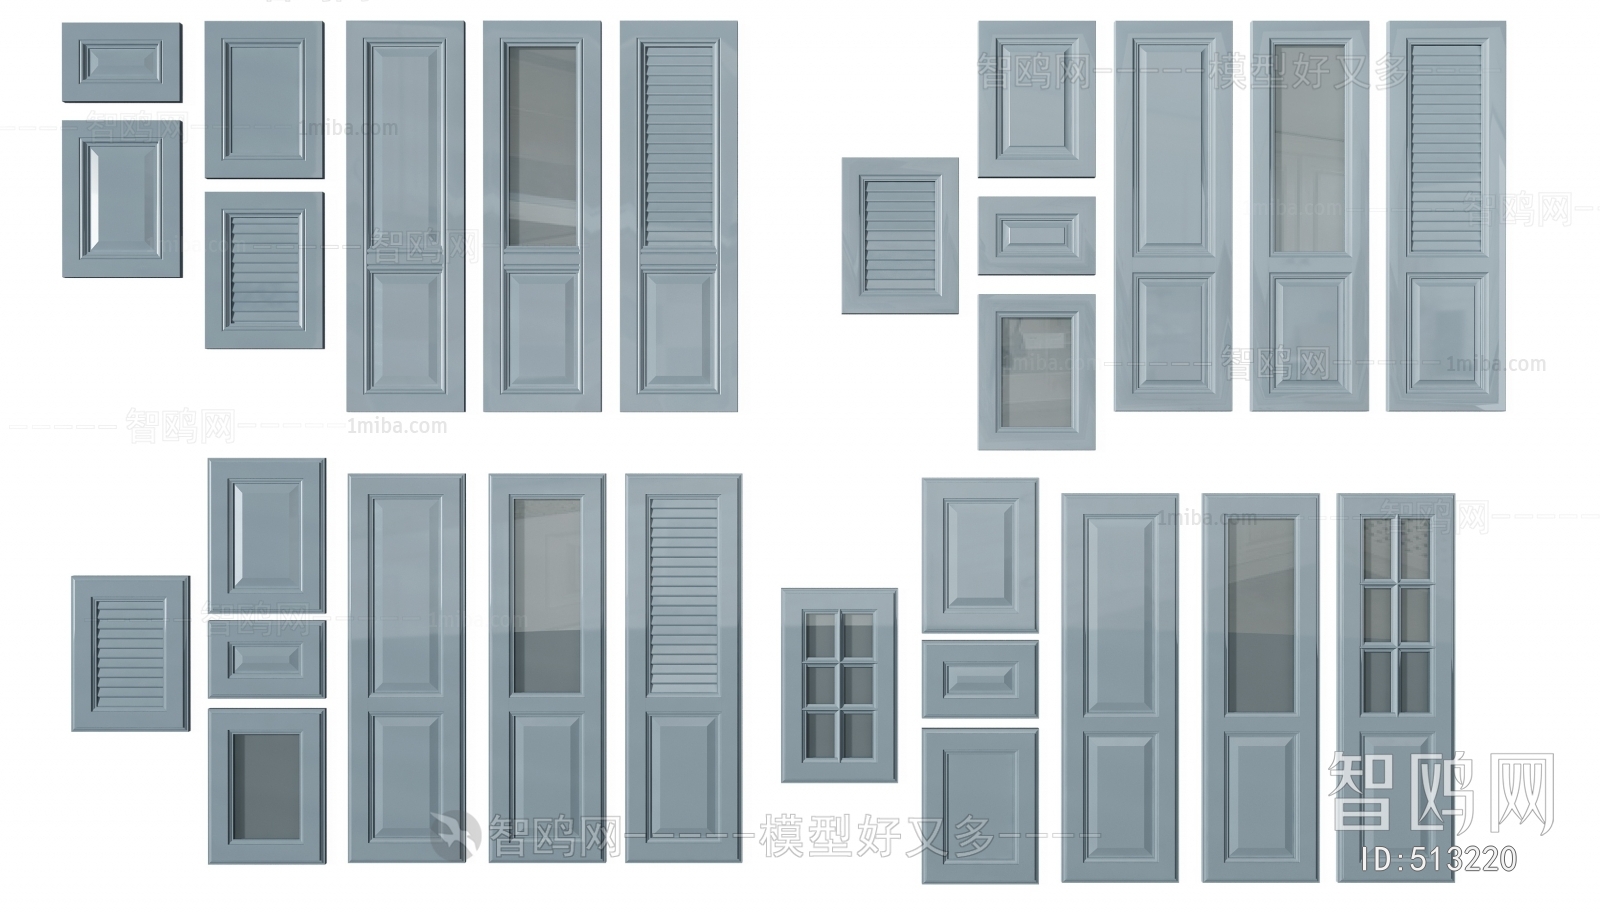 Simple European Style Door Panel